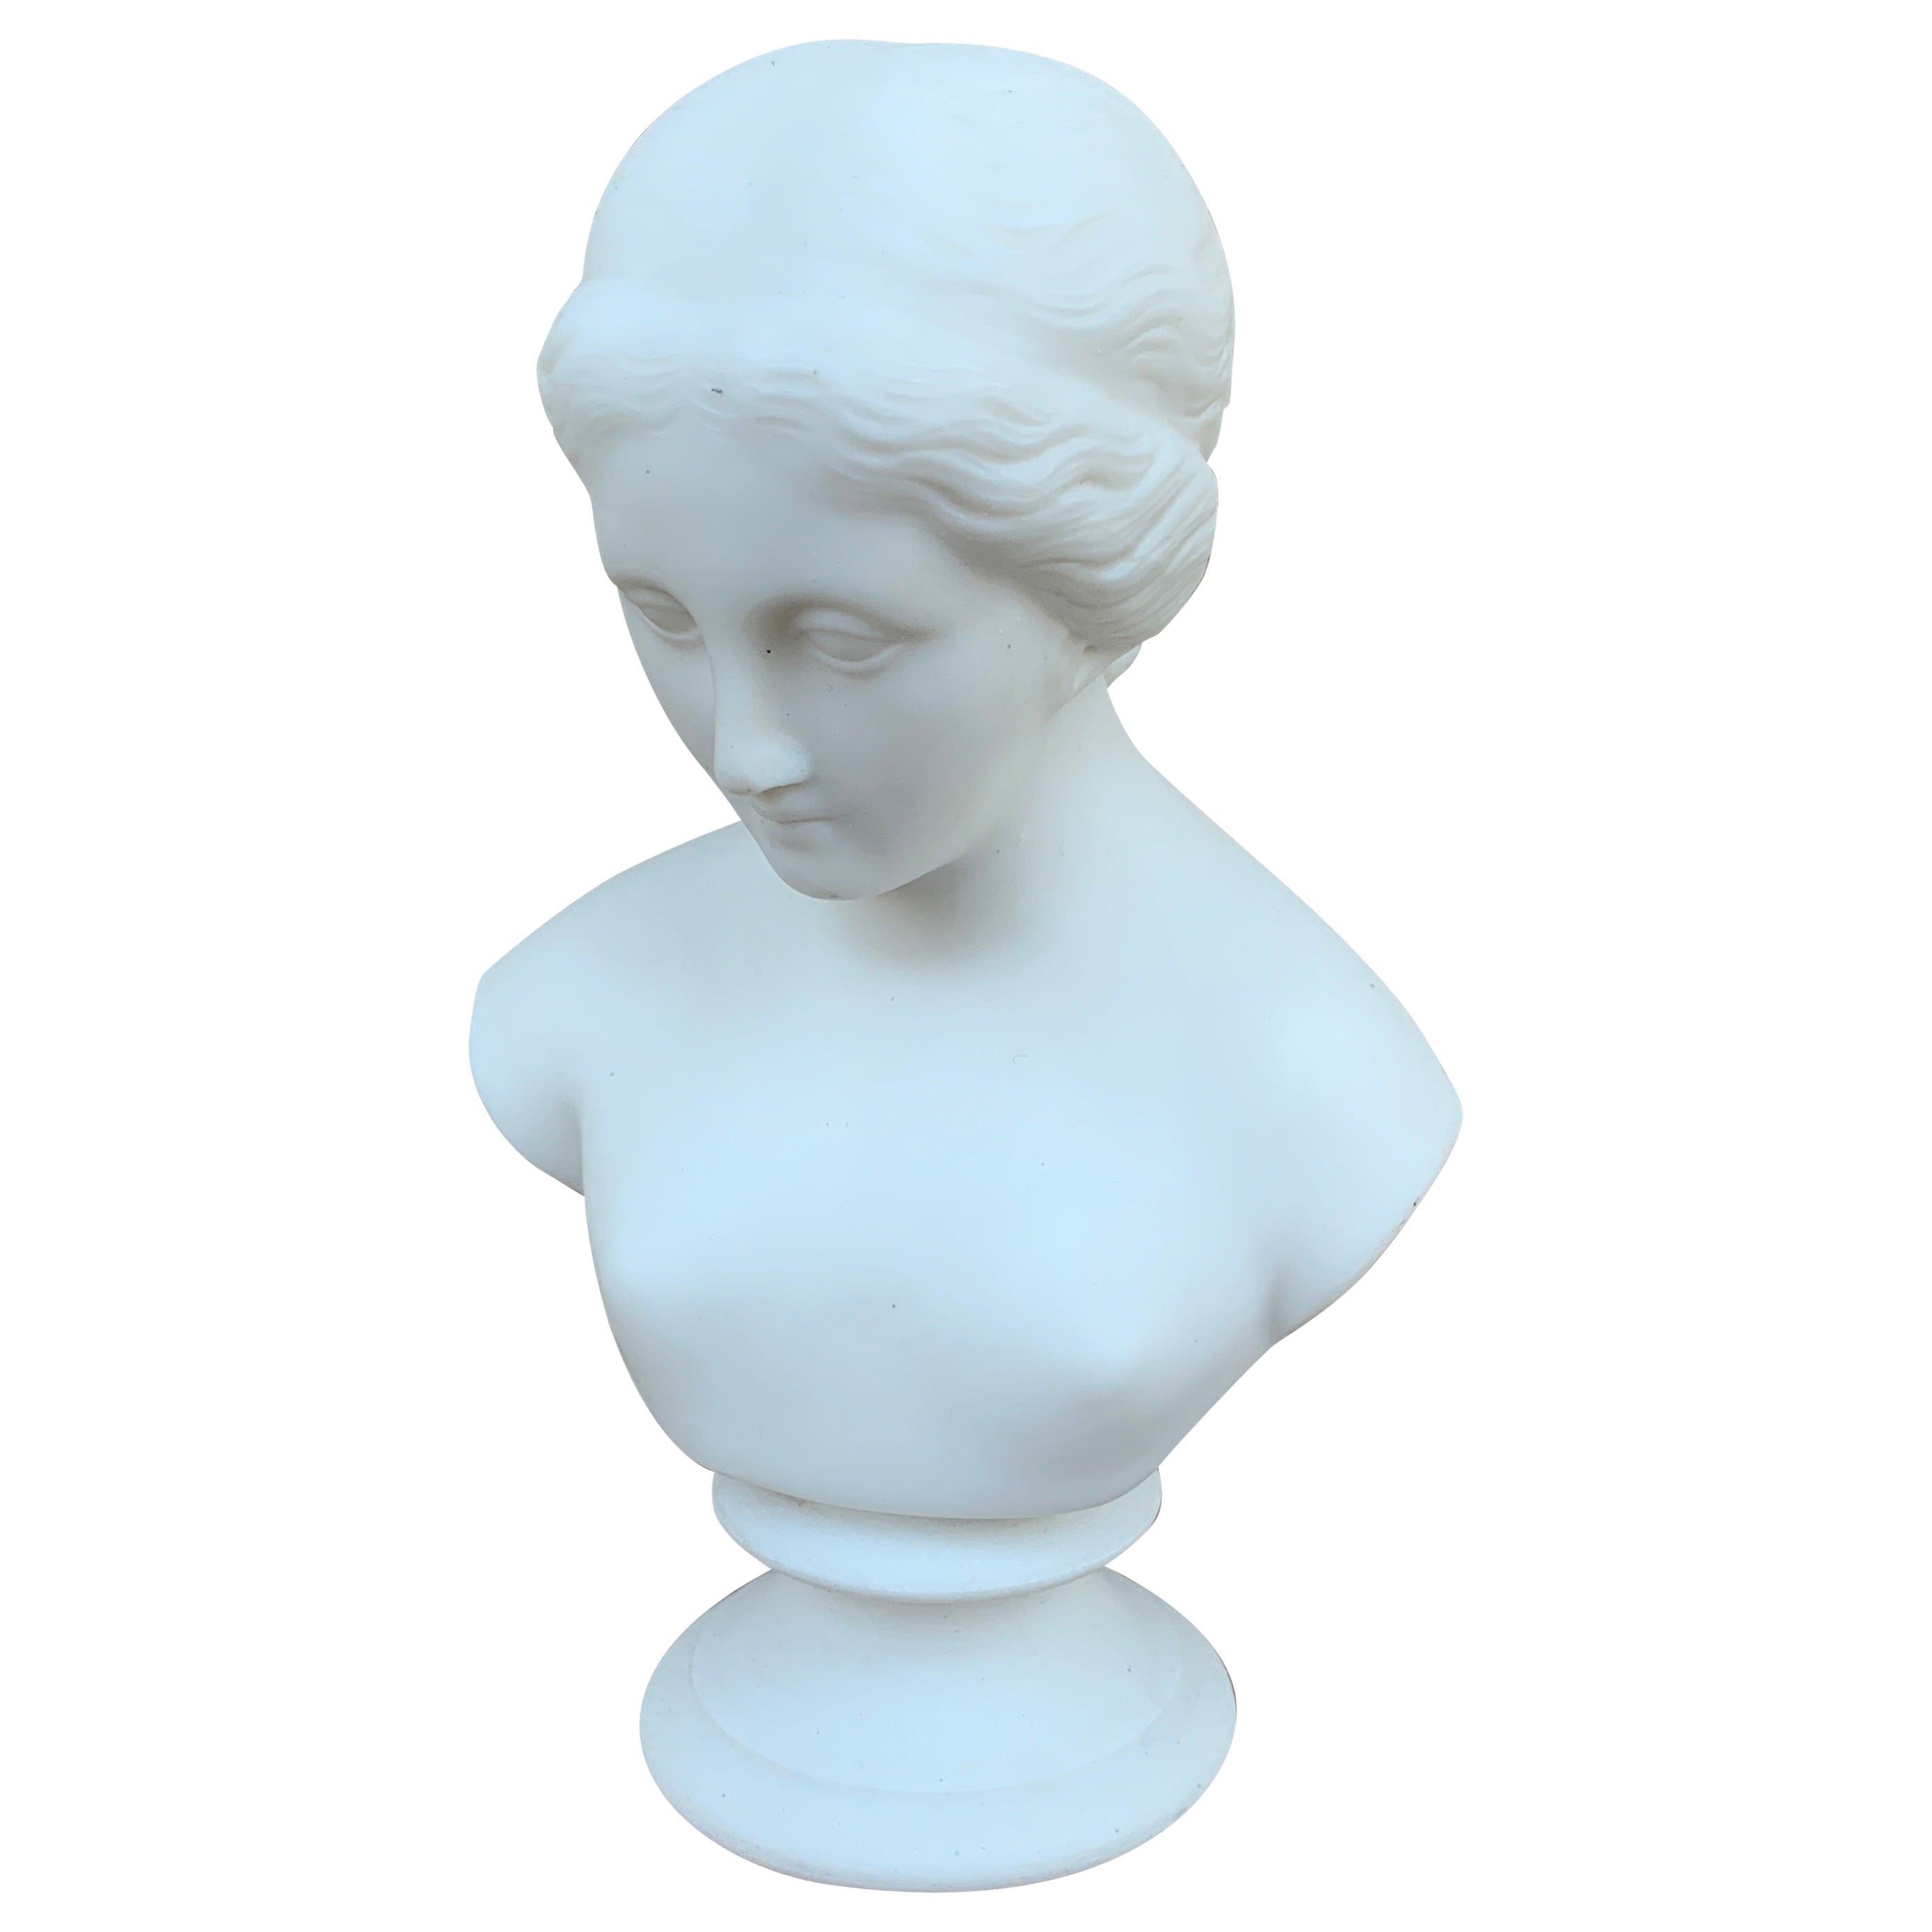 Vintage Classical Female Parian Porcelain Bust Sculpture